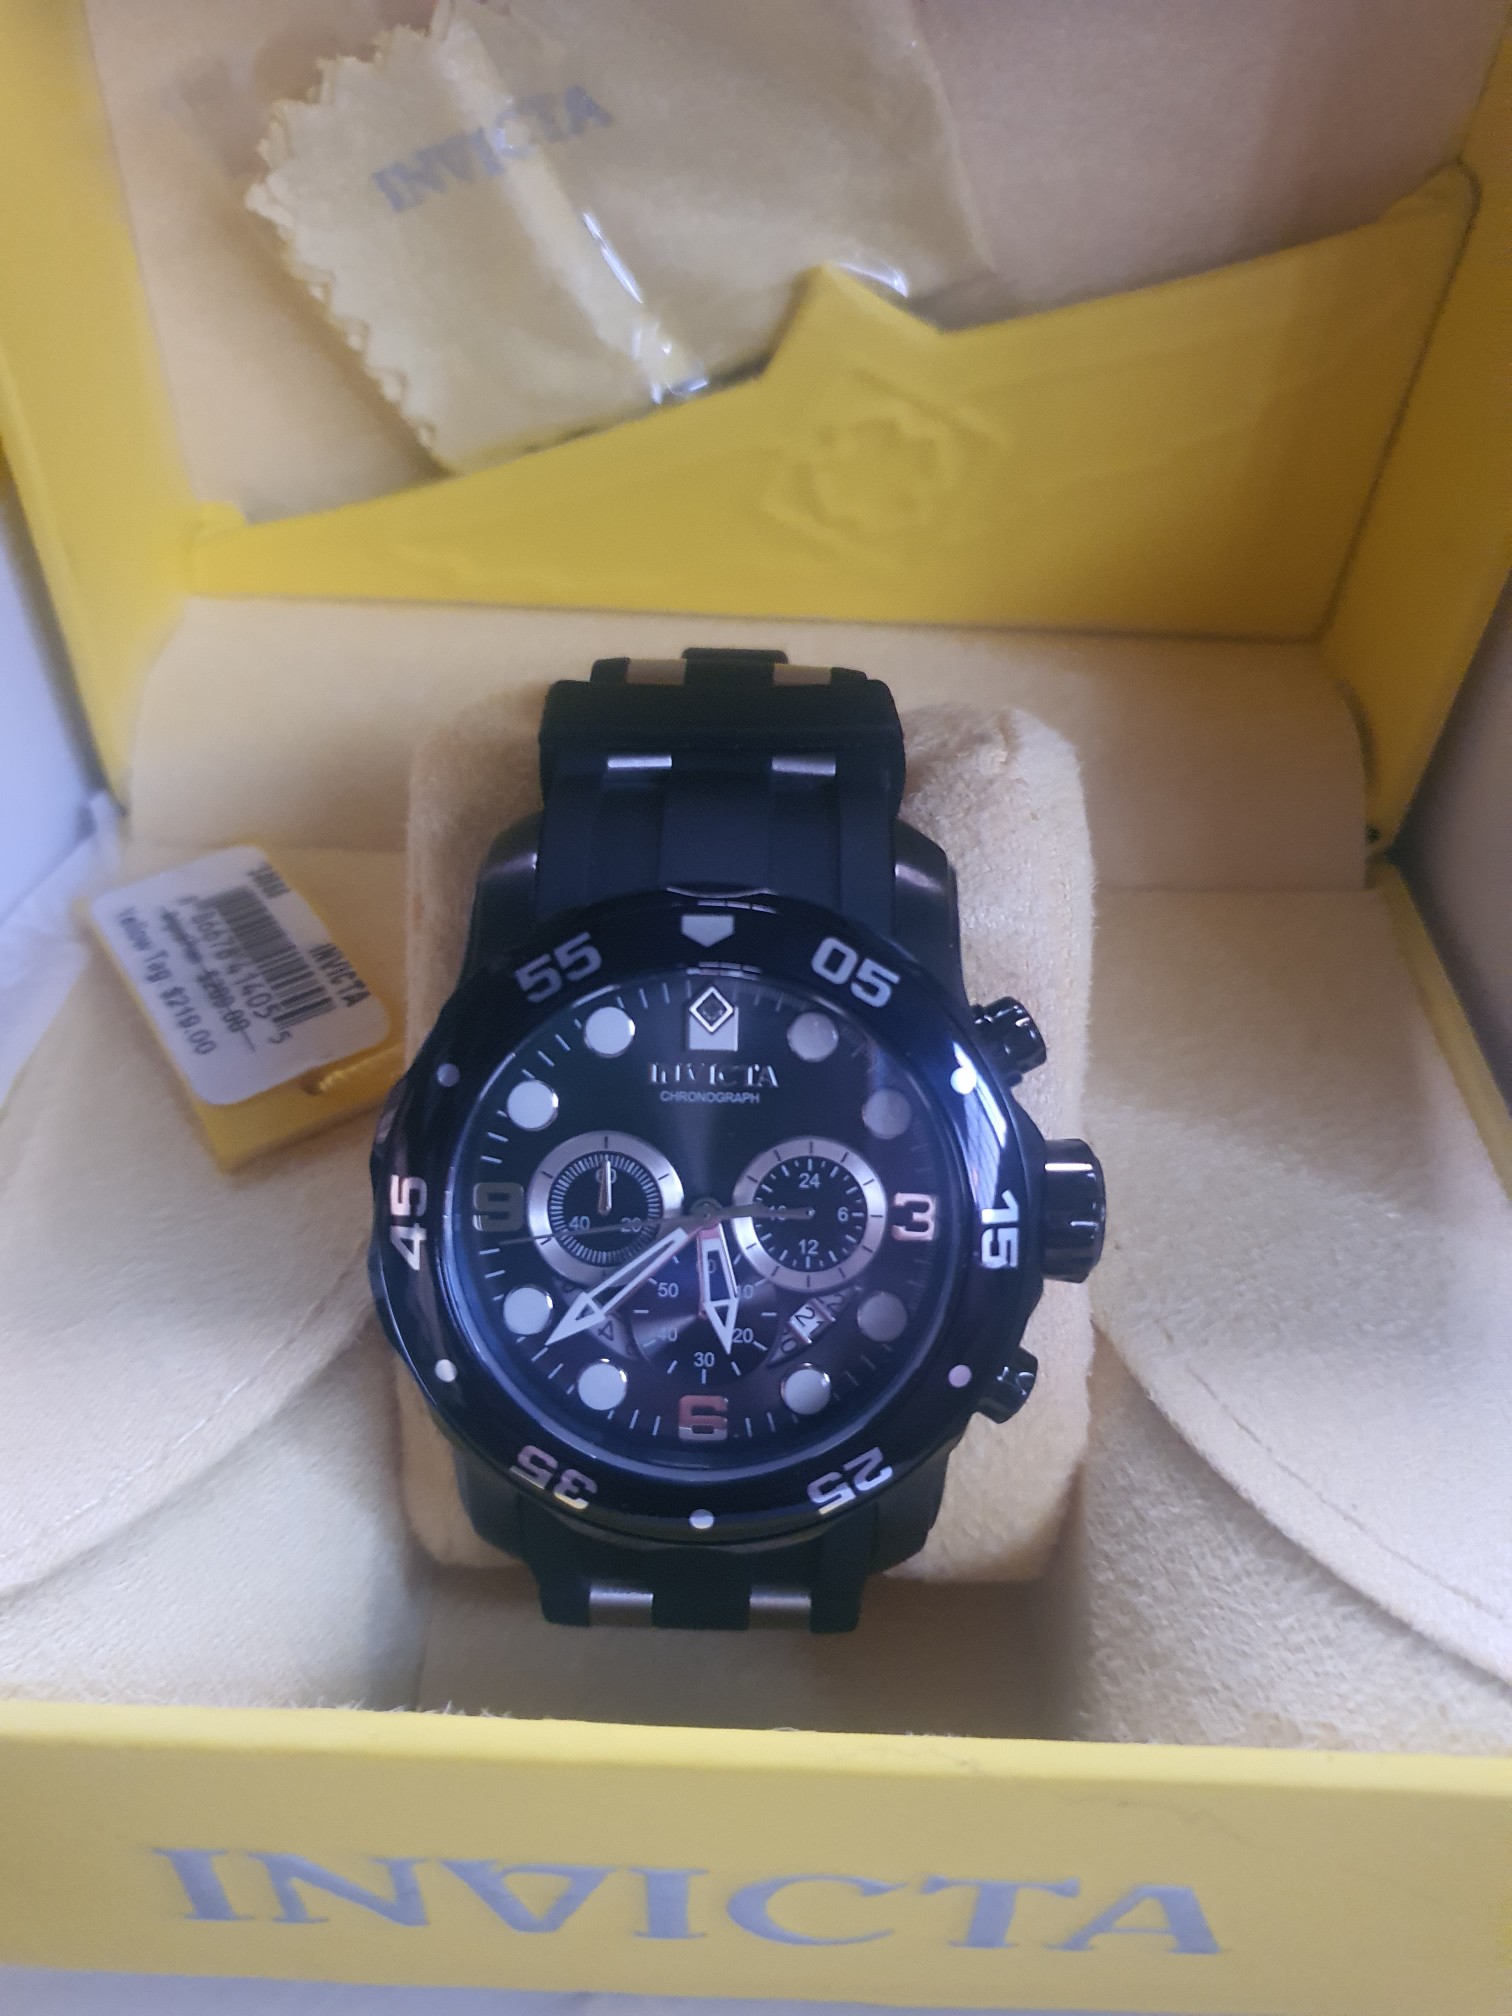 joyas, relojes y accesorios - Reloj invicta pro driver hombre en oferta
Model 34666 - Men's Watch Quartz